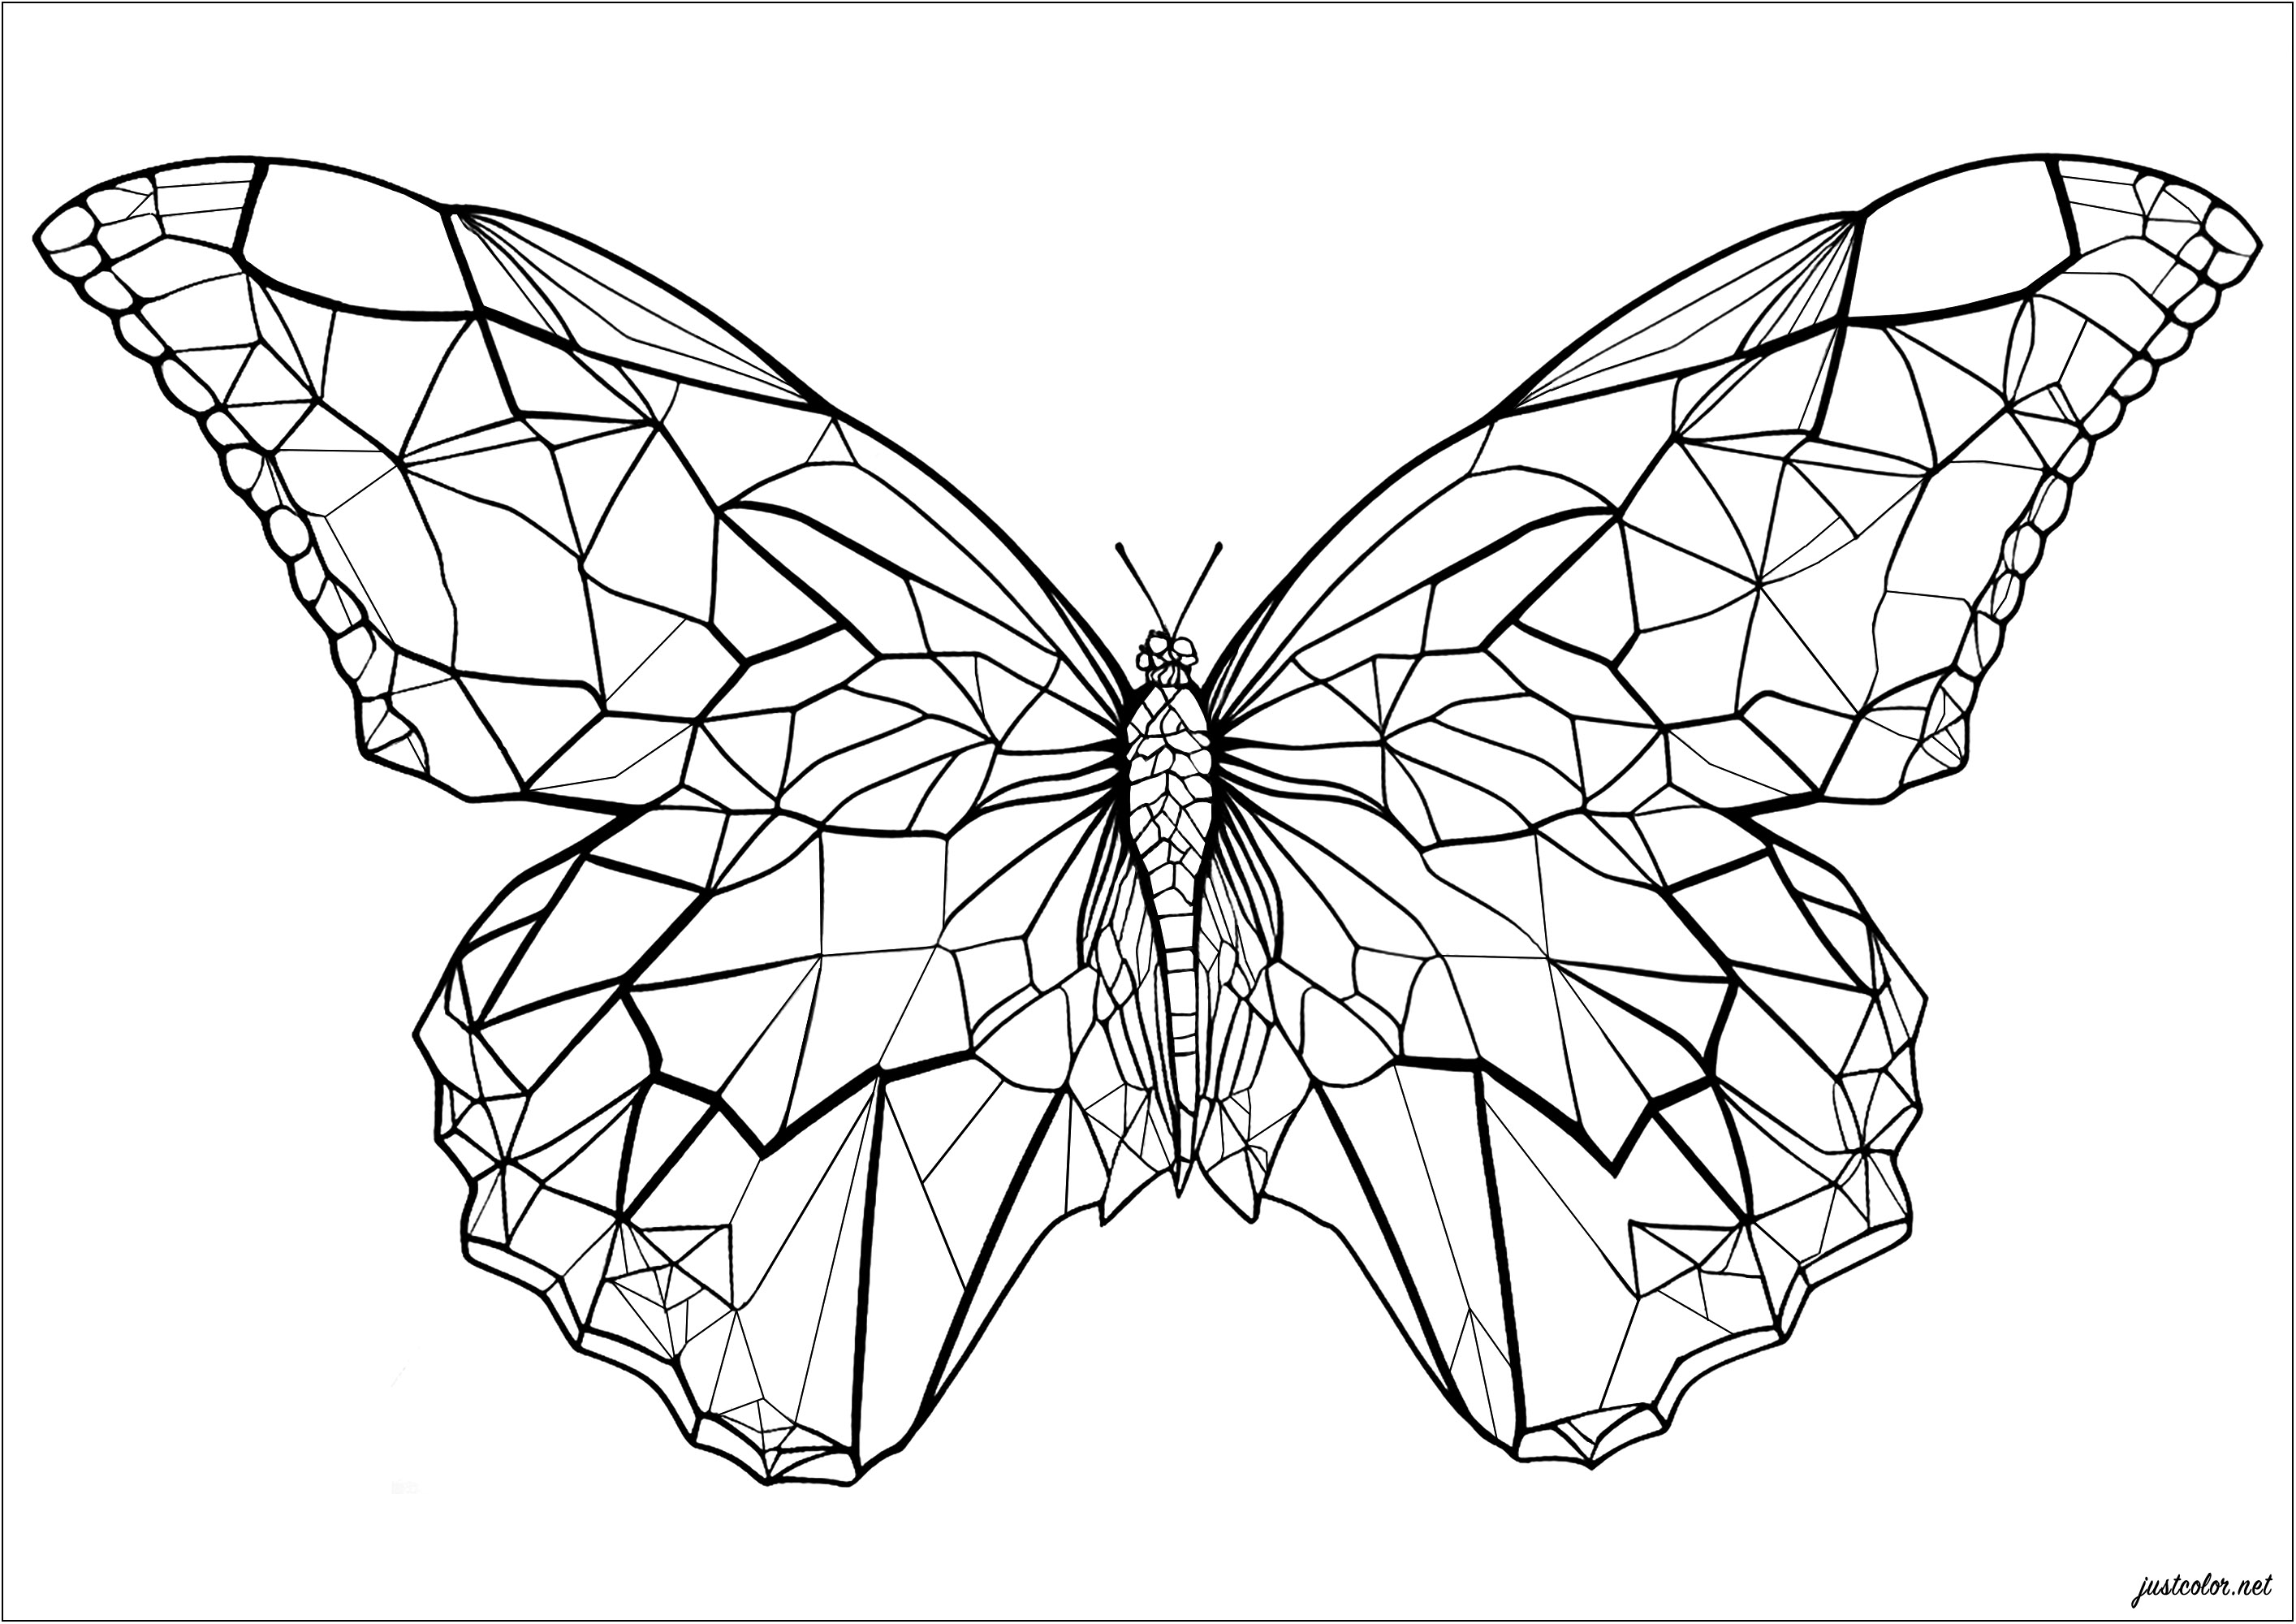 Un papillon aux ailes angulaires et géométriques. Coloriez chaque forme géométrique des ailes de ce magnifique papillon ! Dégradés de couleurs, couleurs de l'arc-en-ciel ... Symétrie ou non ... à vous de choisir votre style, les possibilités sont infinies et le résultat sera à coup sûr magnifique.